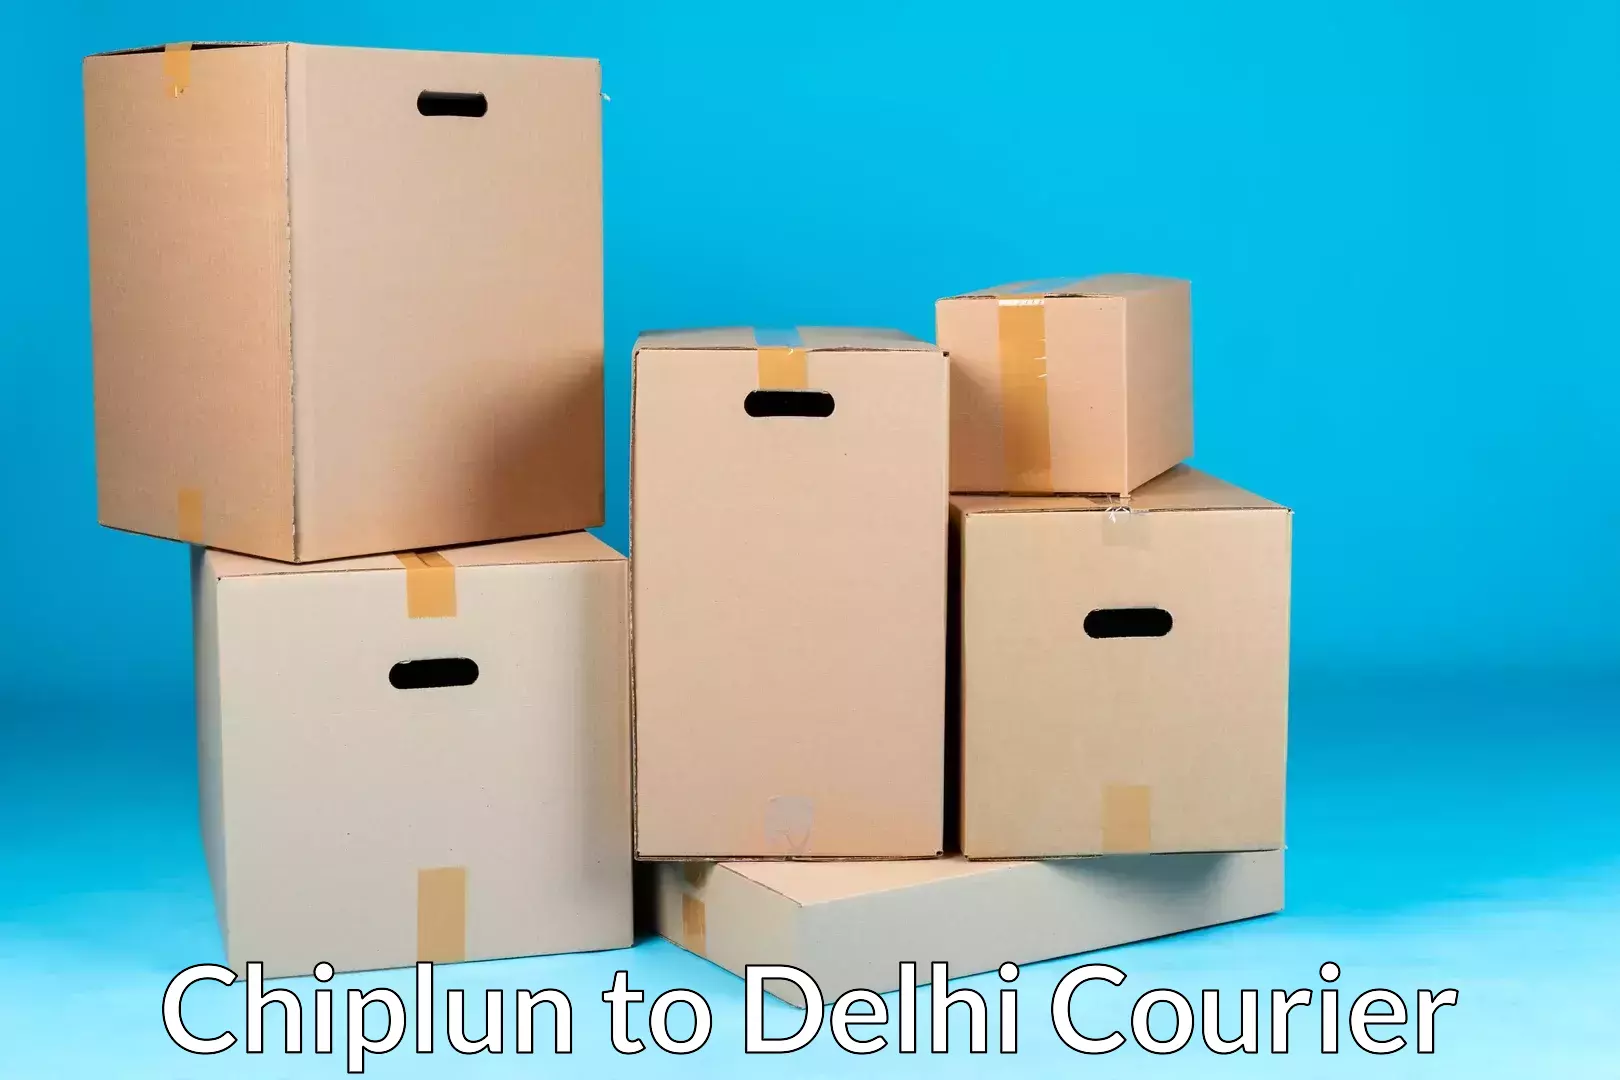 Furniture transport services in Chiplun to Jamia Millia Islamia New Delhi